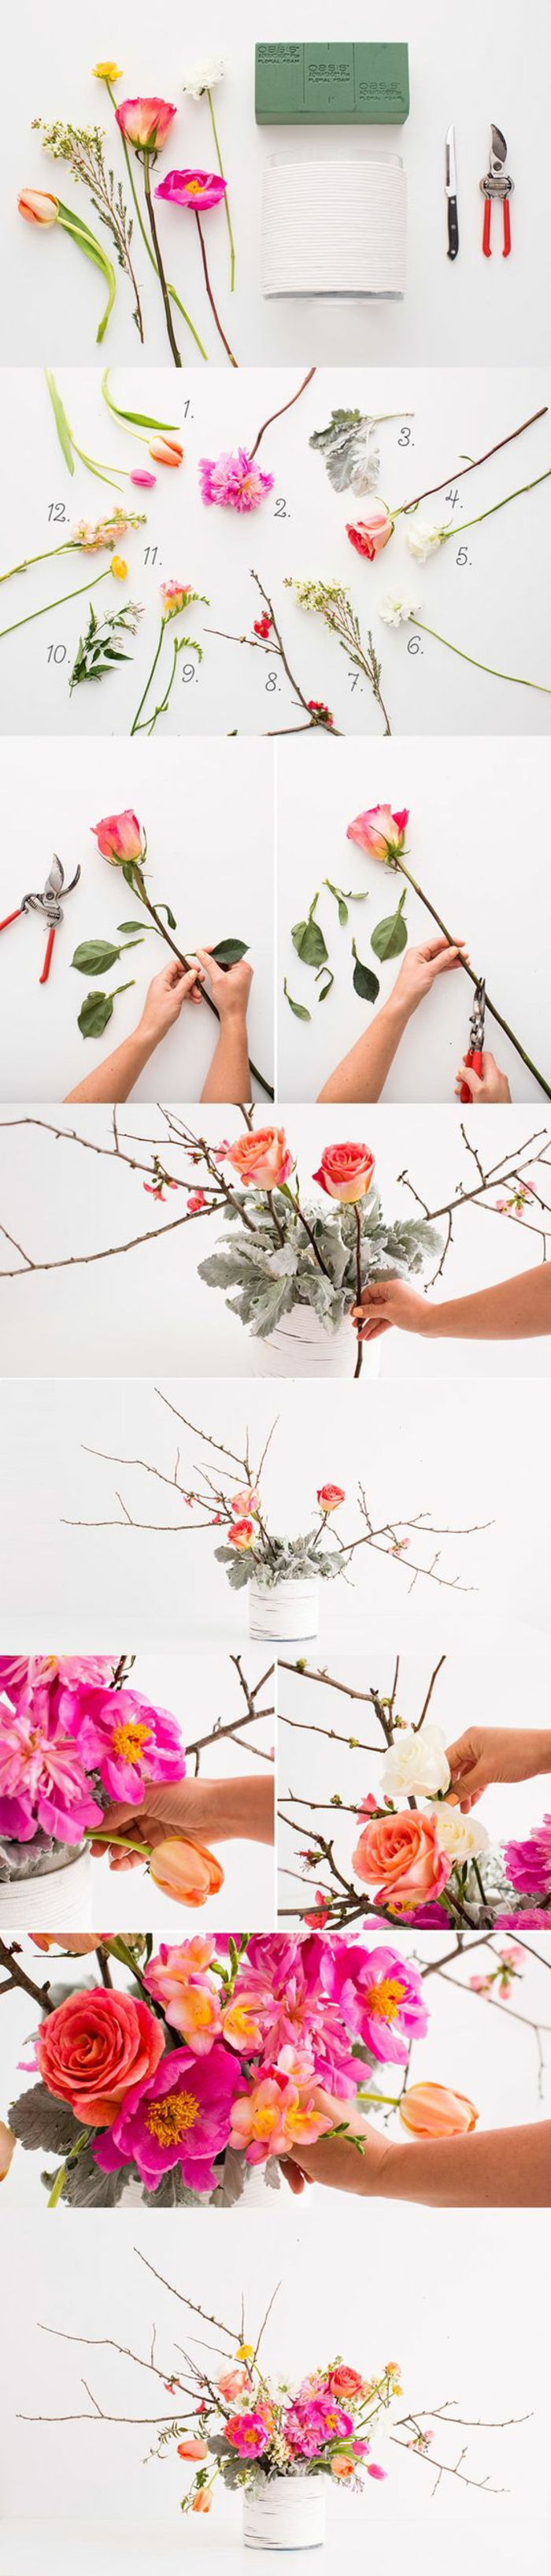 Decorazione primaverile, vaso bianco, fiori rosa, rami, decorazione da tavola